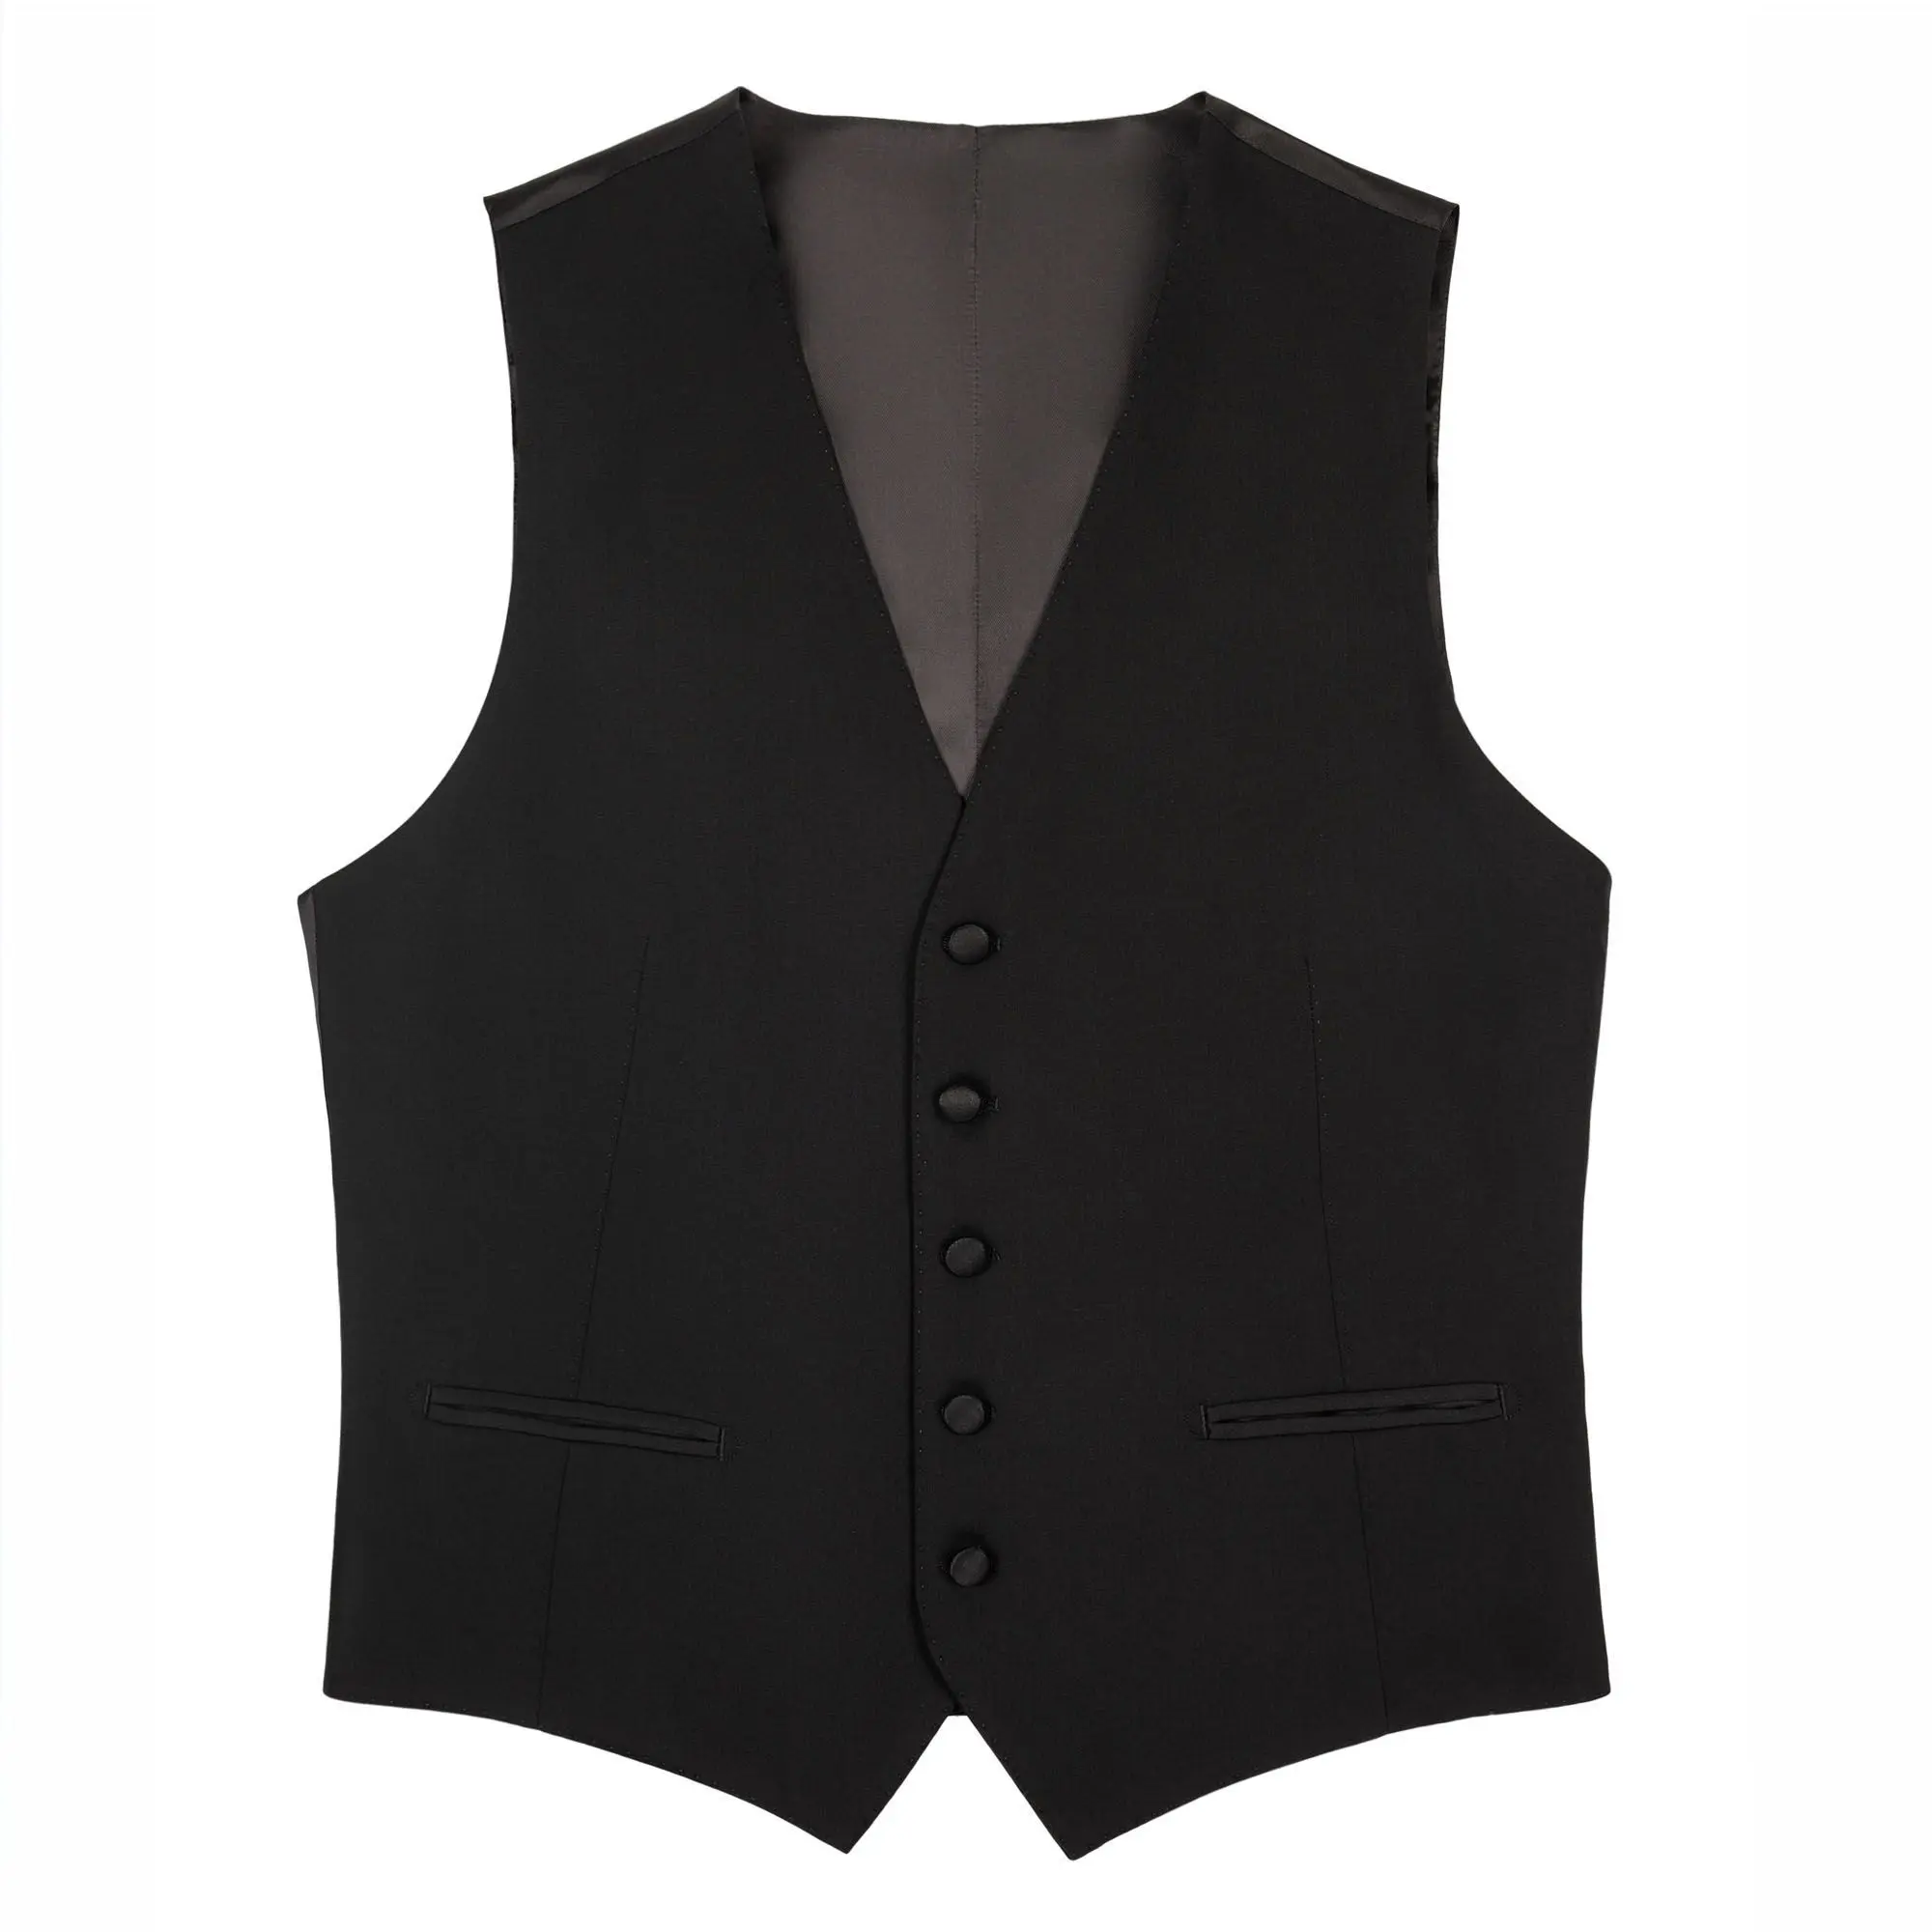 Ανδρικό Κοστούμι Σμόκιν Με Γιλέκο Crepe Μαύρο Tailor Italian Wear